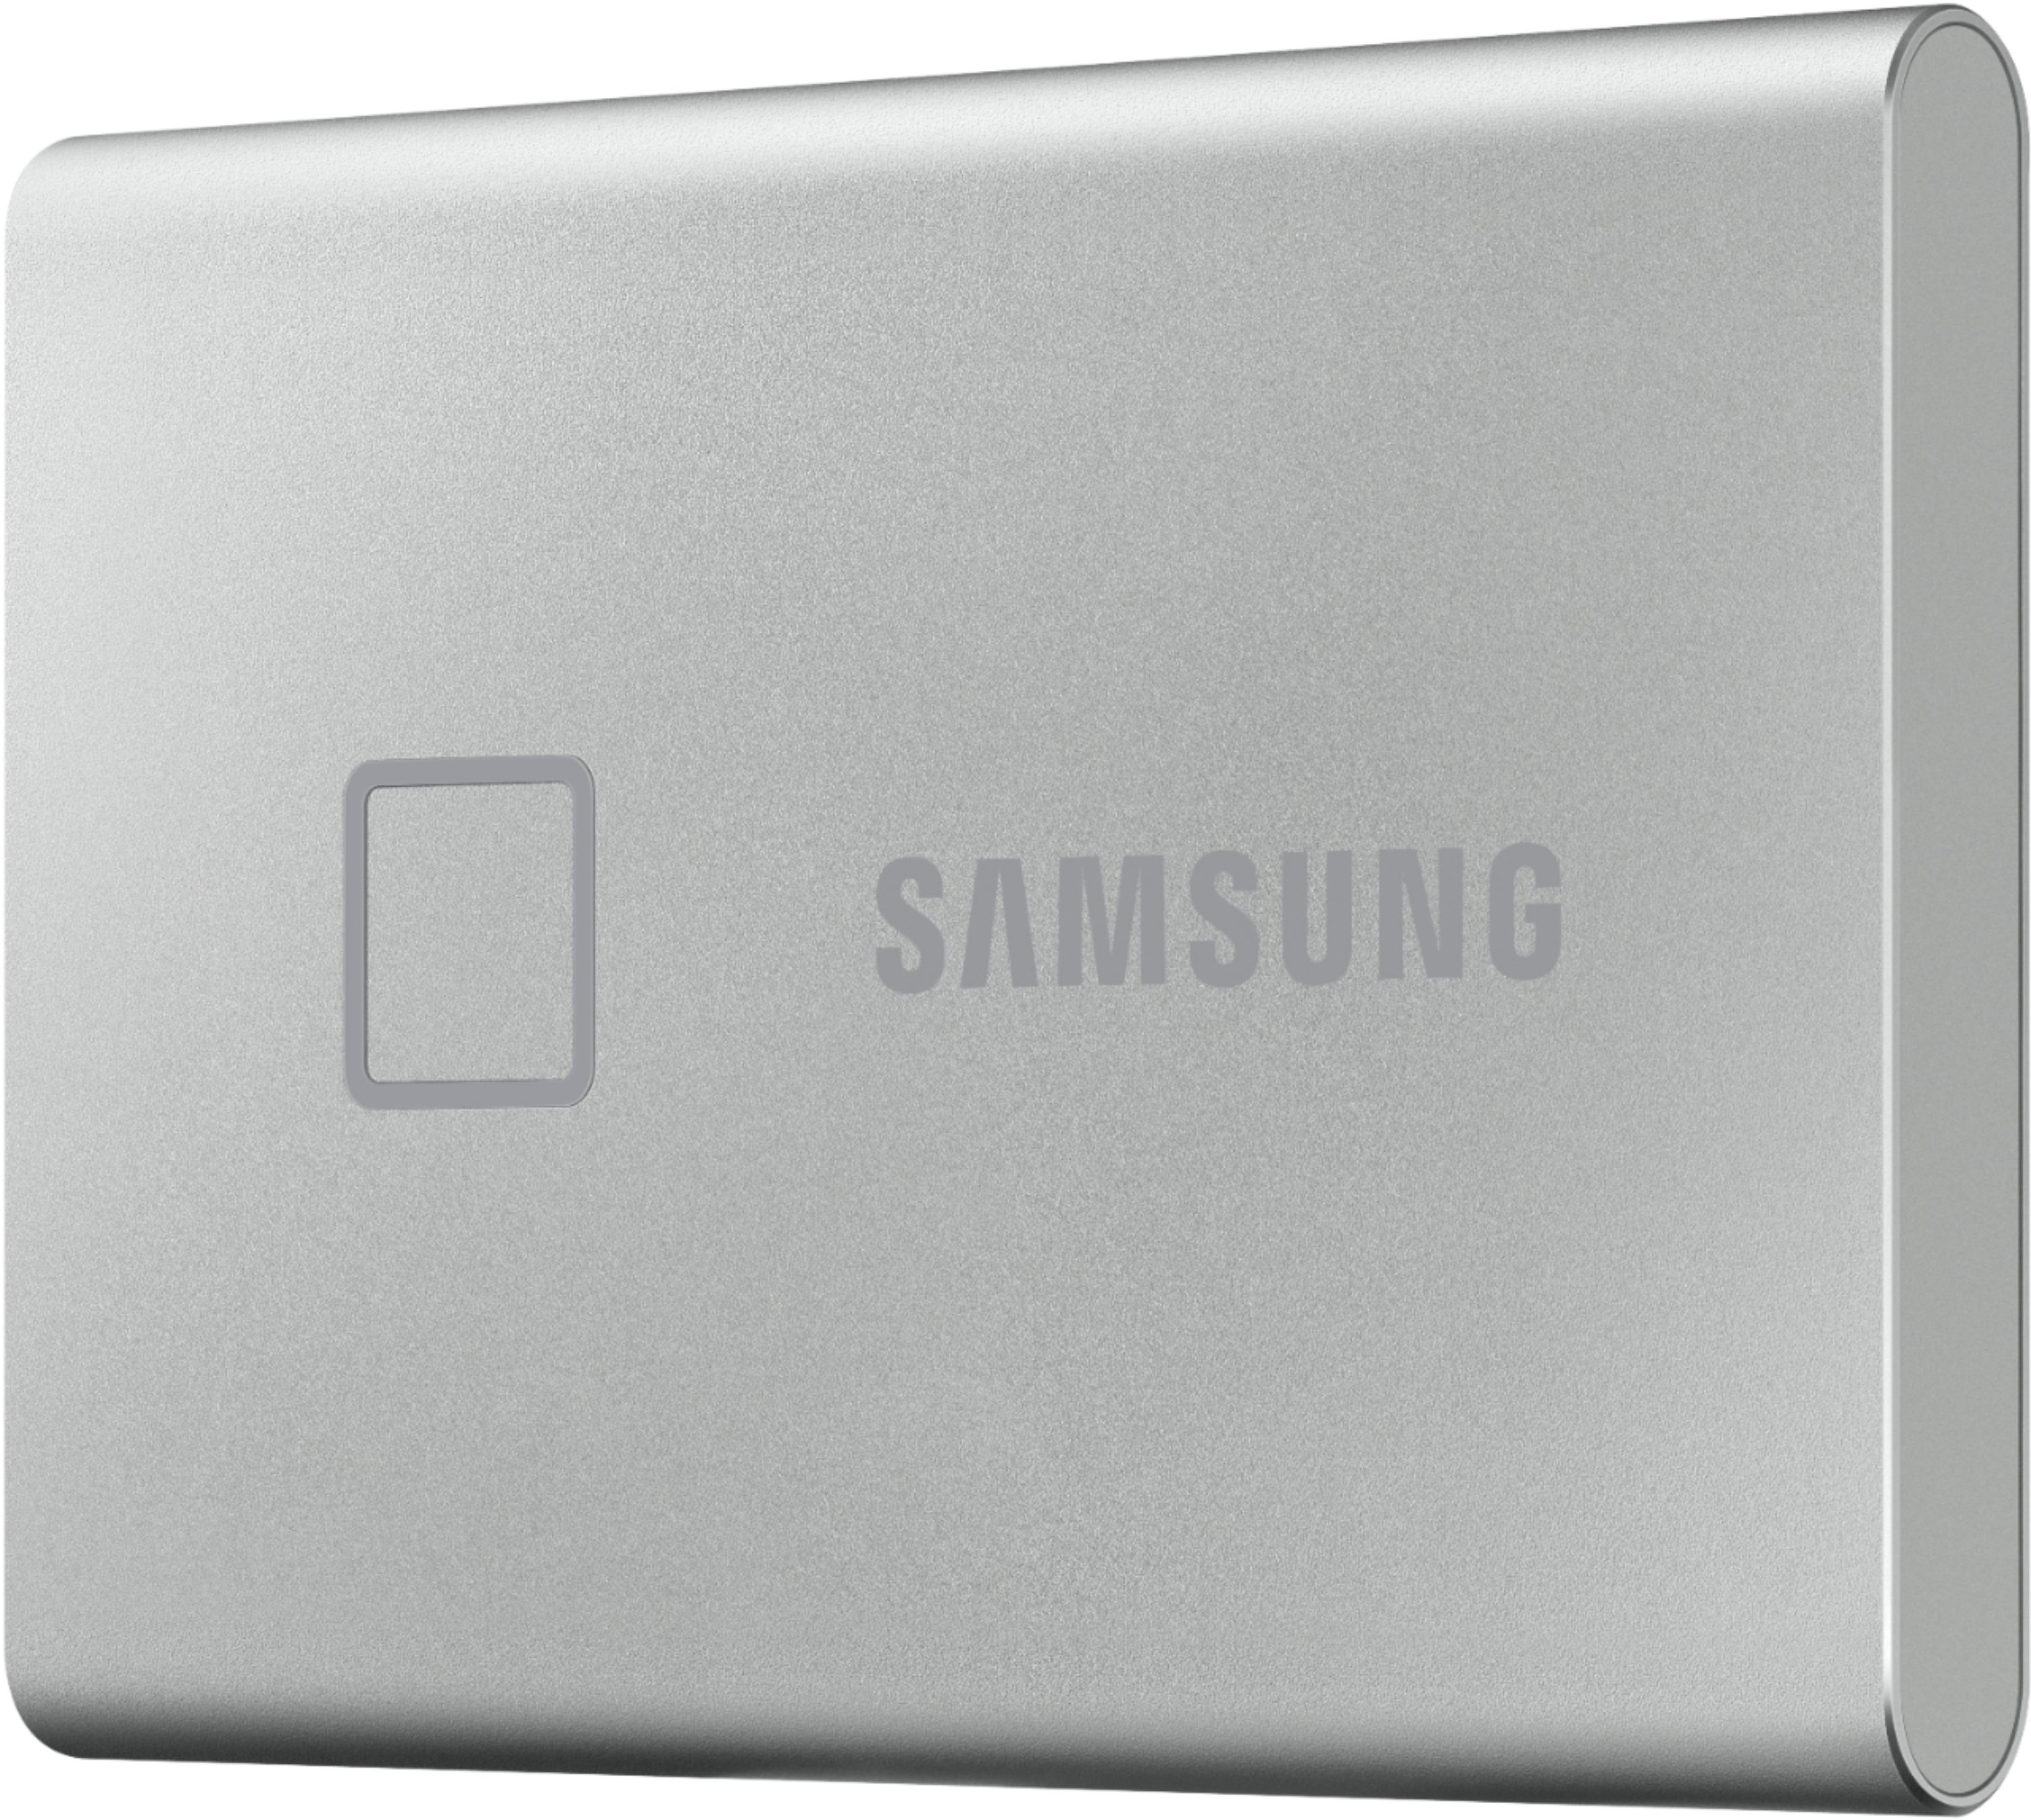 Portable SSD T7 Touch ausprobiert: Samsungs USB-3.2-Gen2-SSD wird